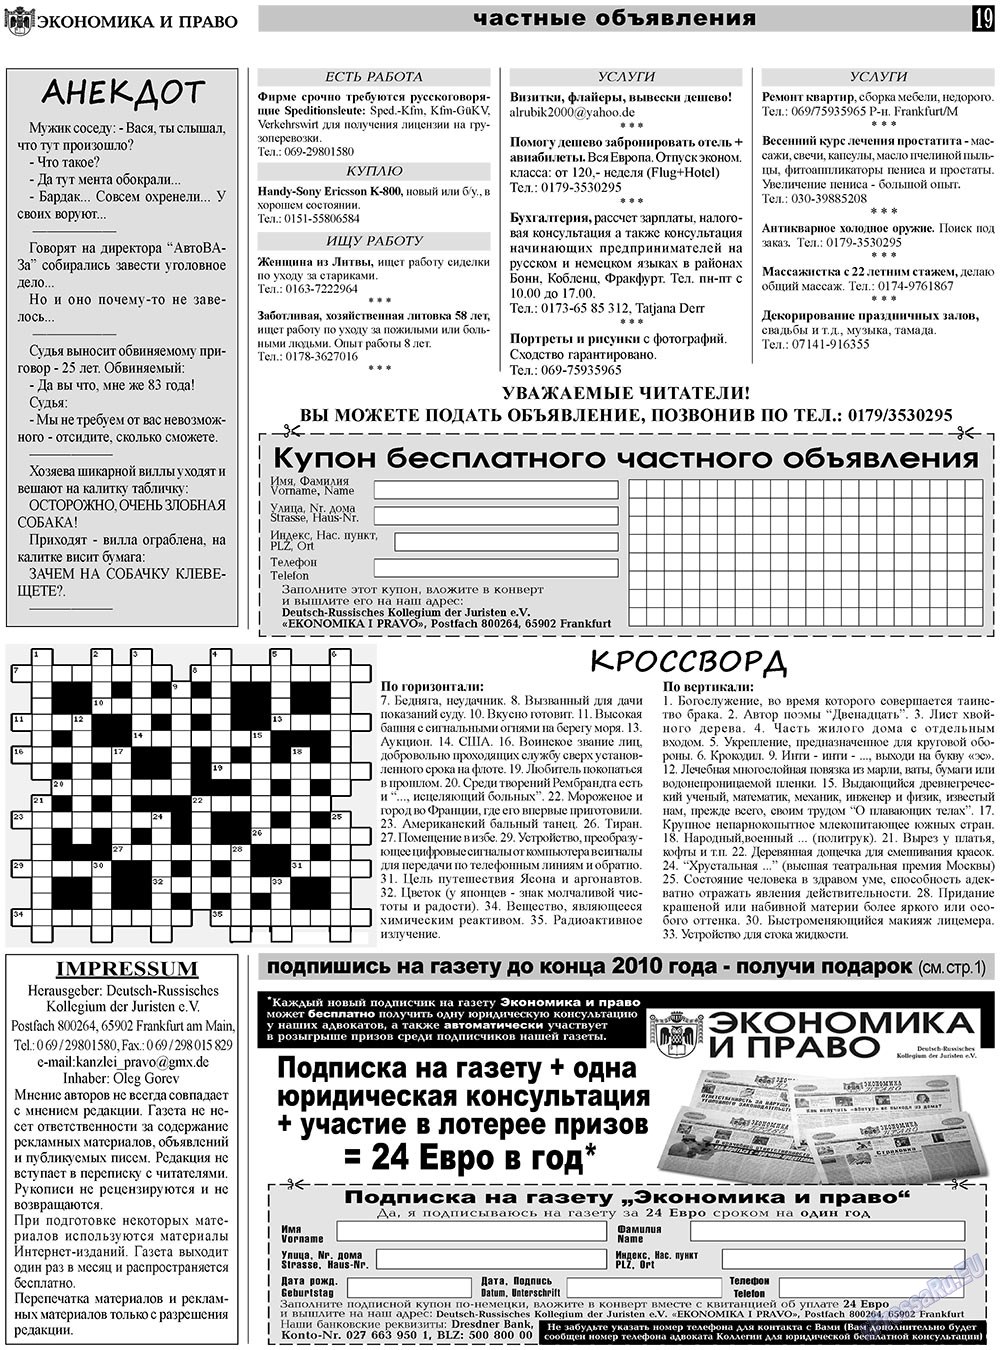 Экономика и право, газета. 2010 №12 стр.19